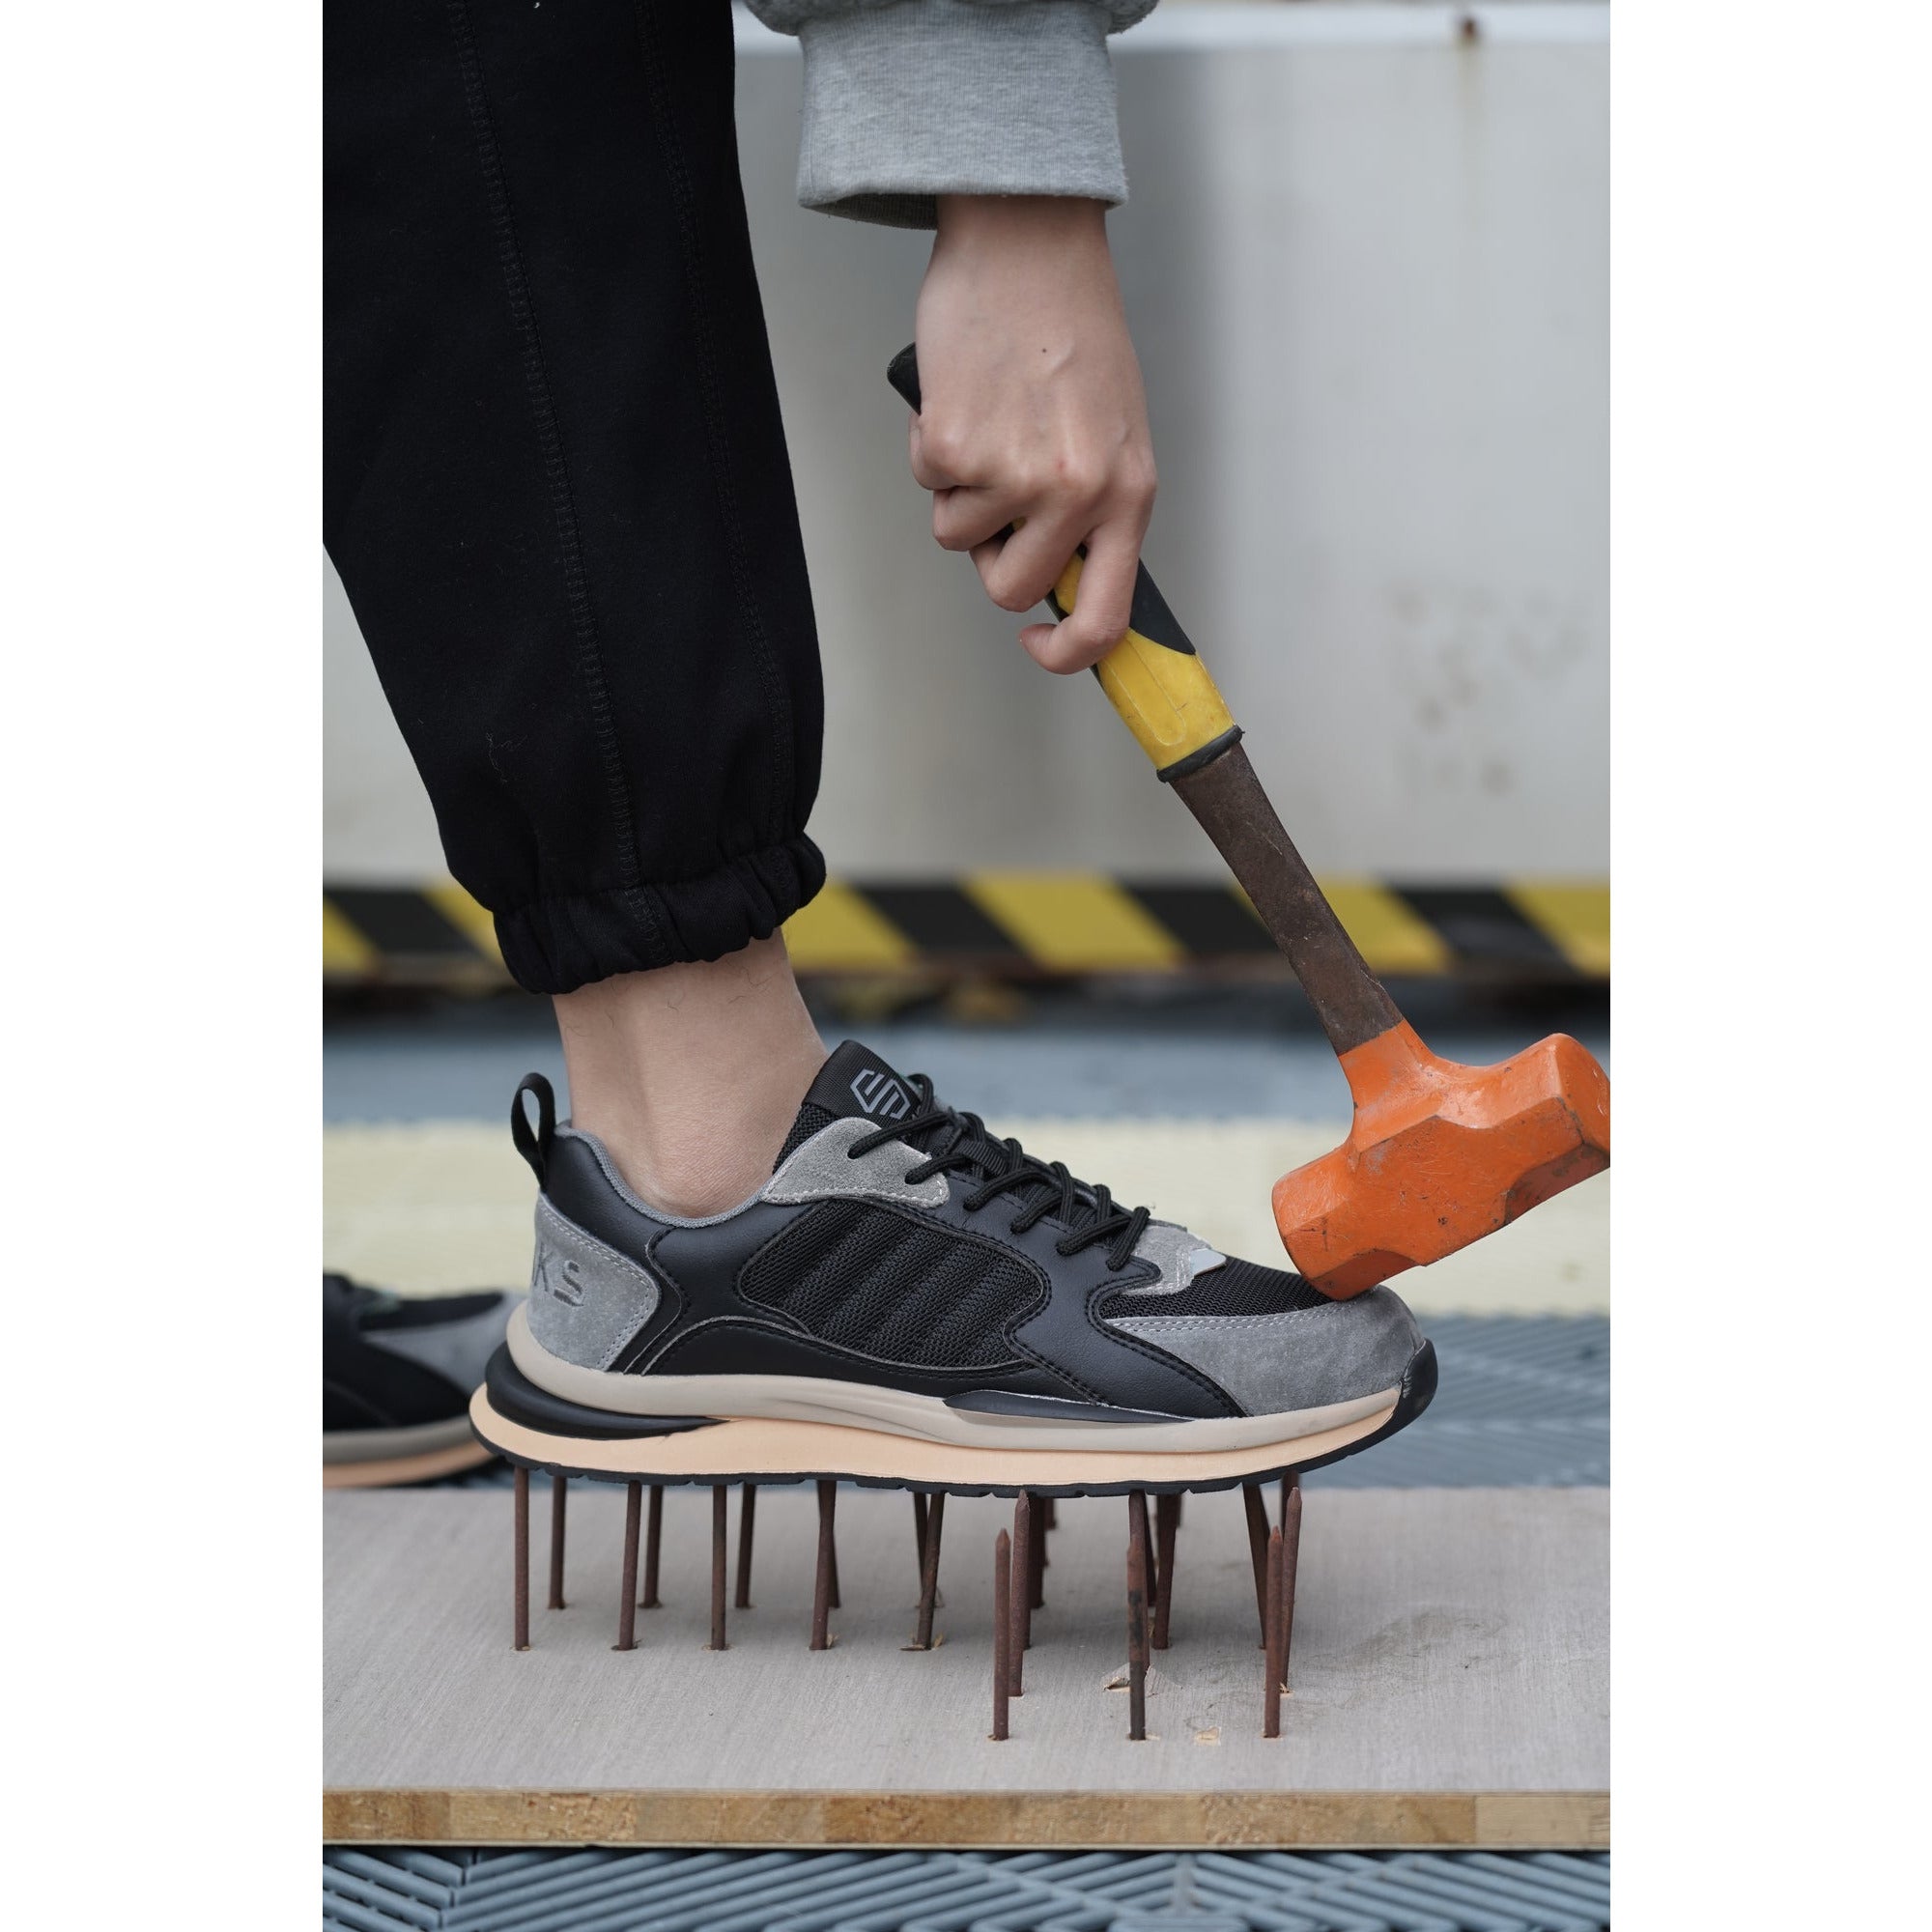 Shraks Venu Werkschoenen - S1P:Zijaanzicht van S1P veiligheidsschoenen sneakers waarbij de unieke kenmerken worden getoond